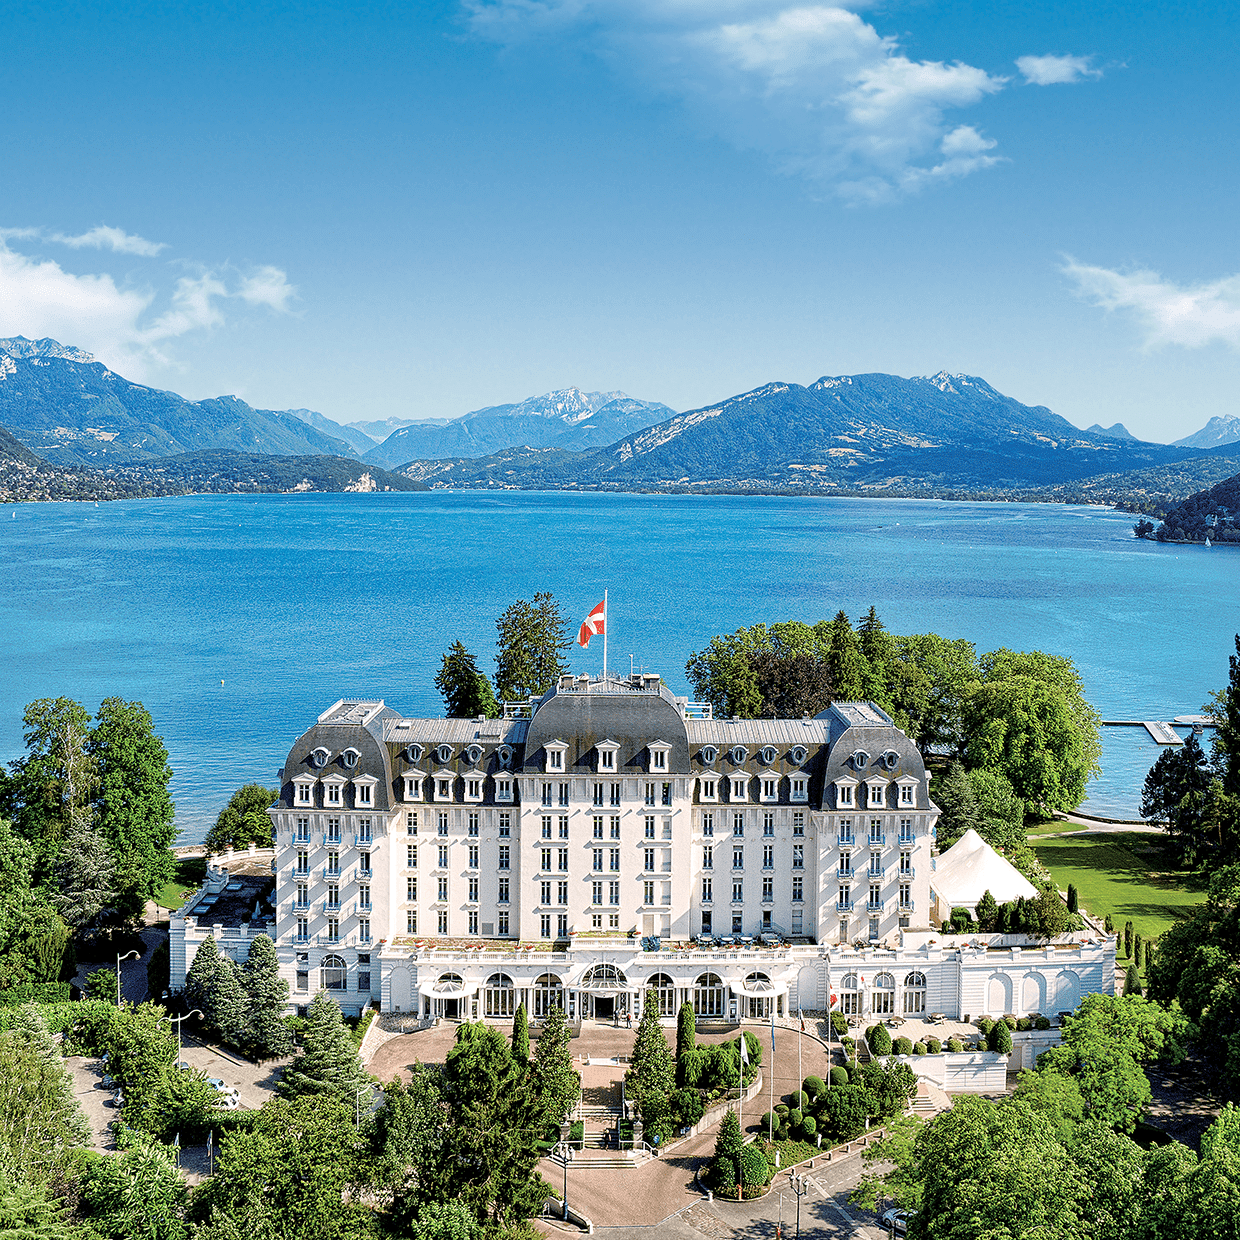 Découvrez l’Impérial Palace avec sa majestueuse façade, un lieu entre lac et montagnes pour vos séminaires d'entreprise